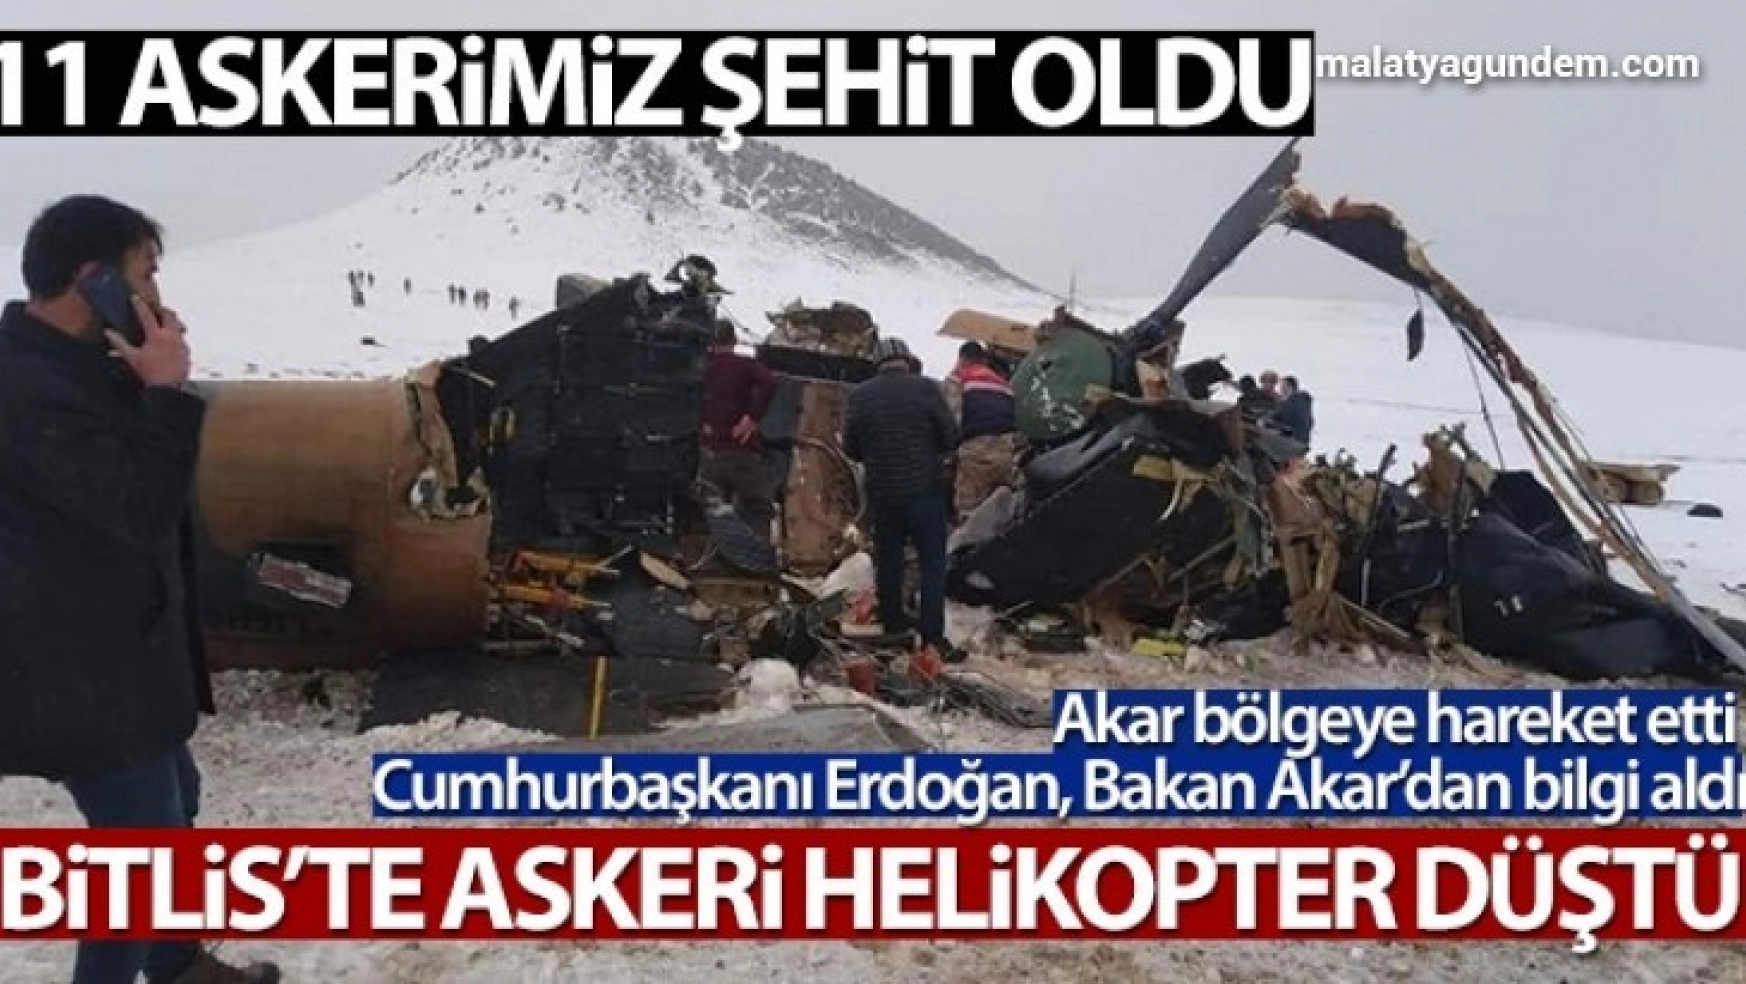 Bitlis'te askeri helikopter düştü: 11 askerimiz şehit oldu